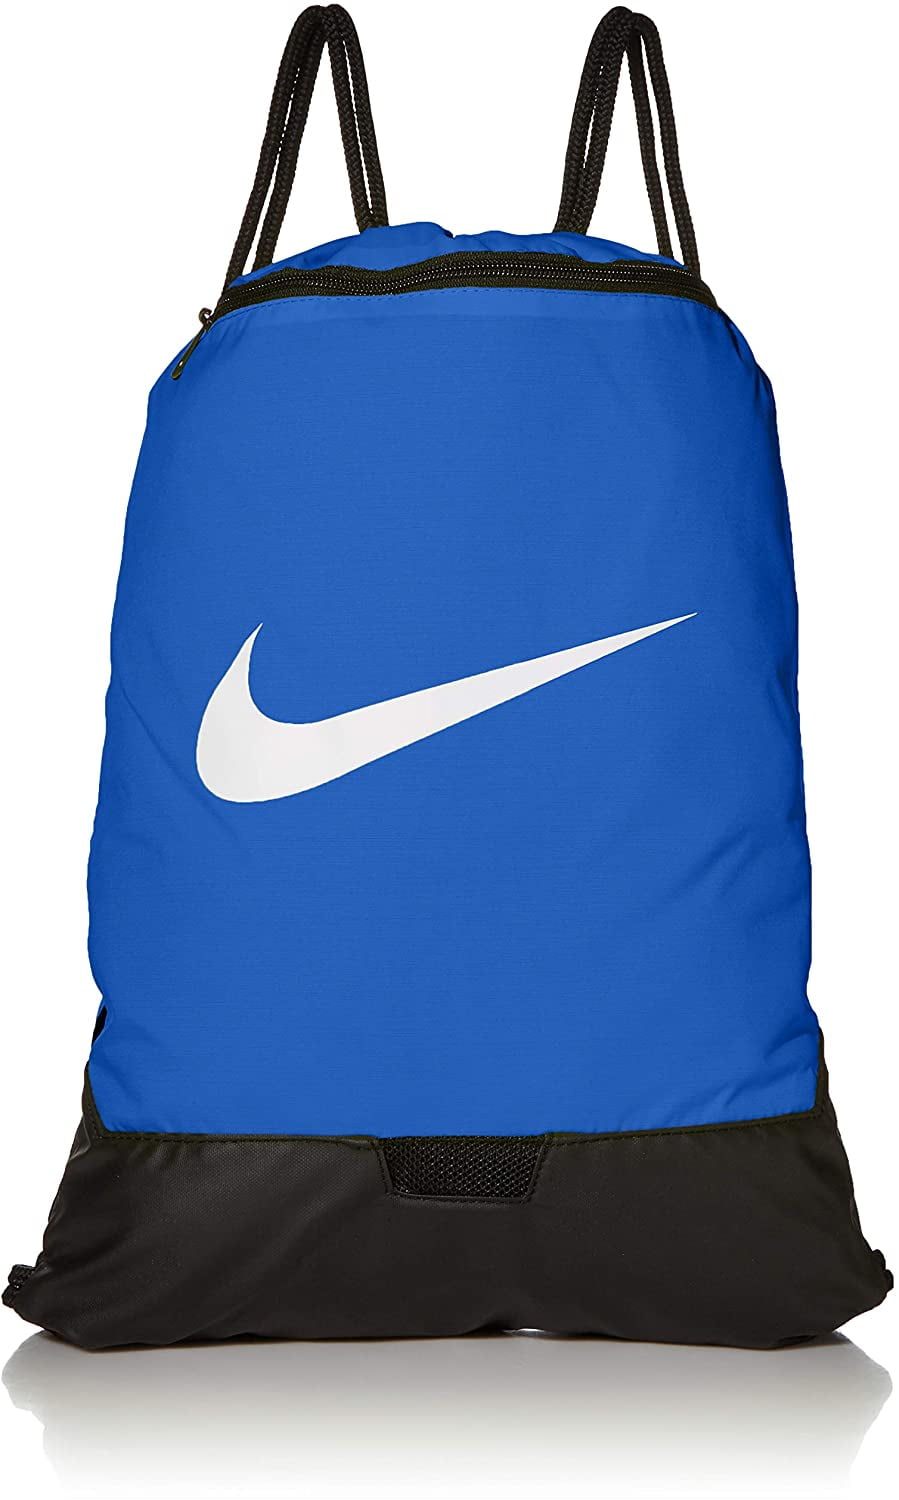 Florida 2013 Drawstring Backpack 